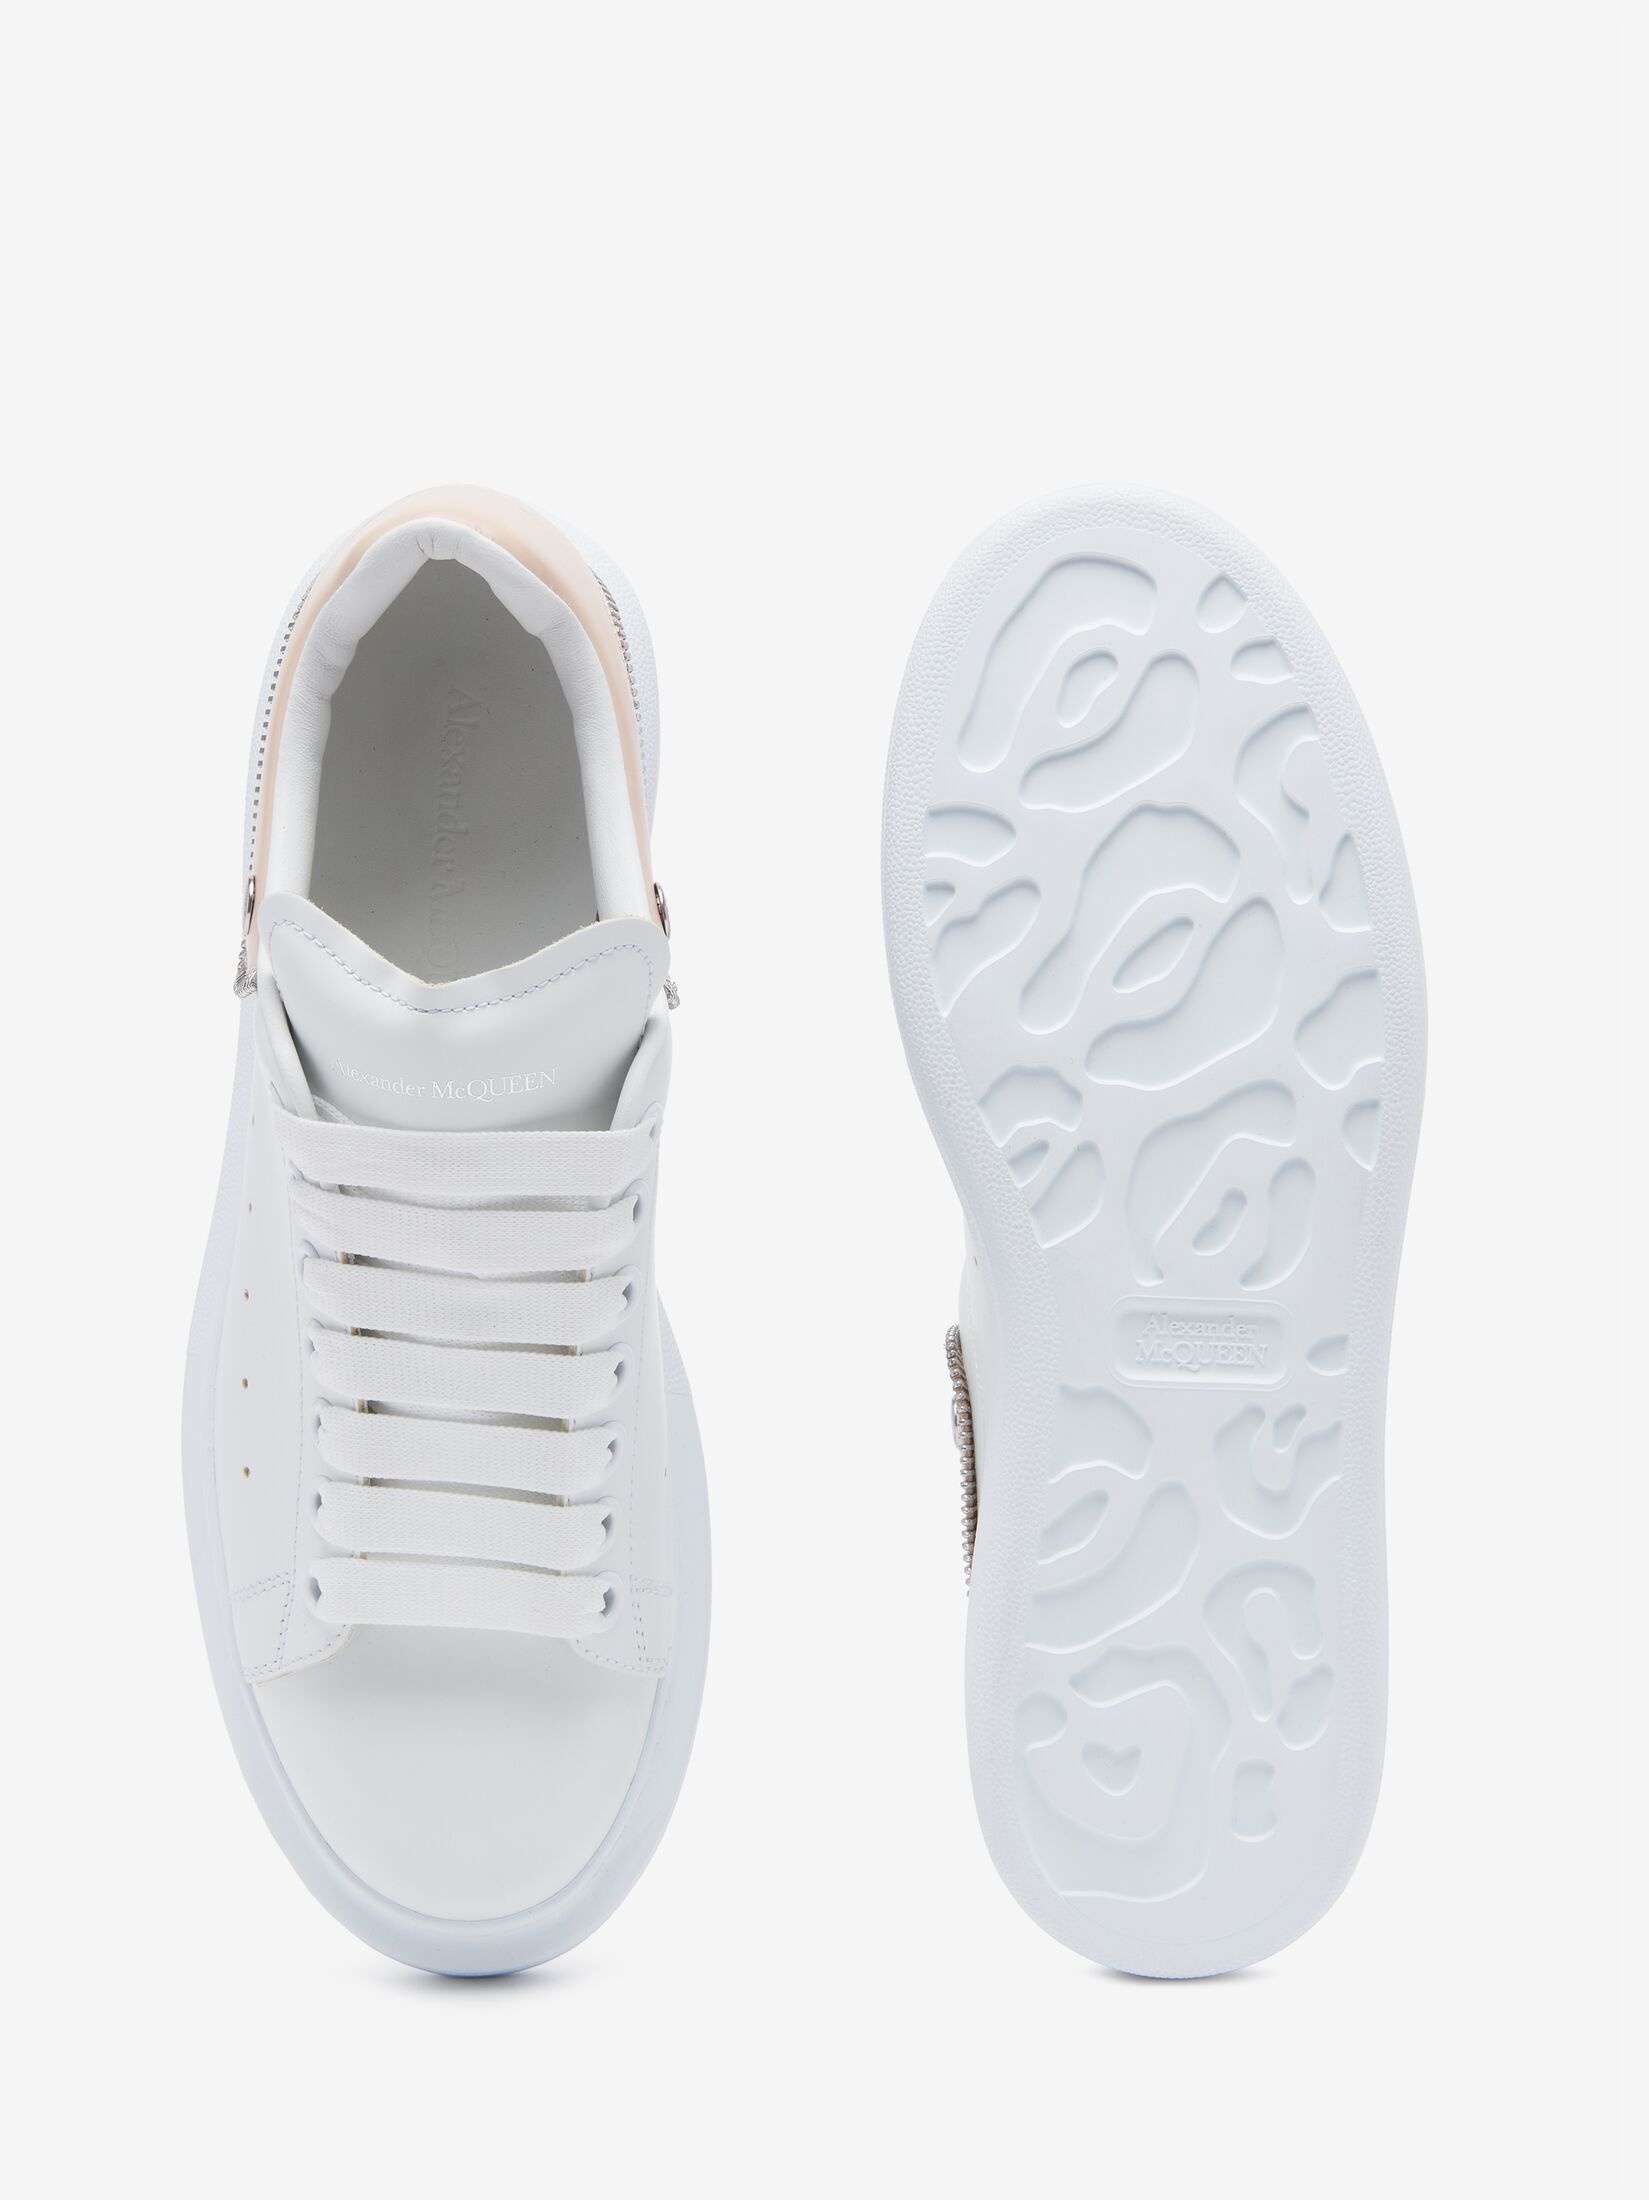 Women's Oversized Sneaker in White/oat - 4